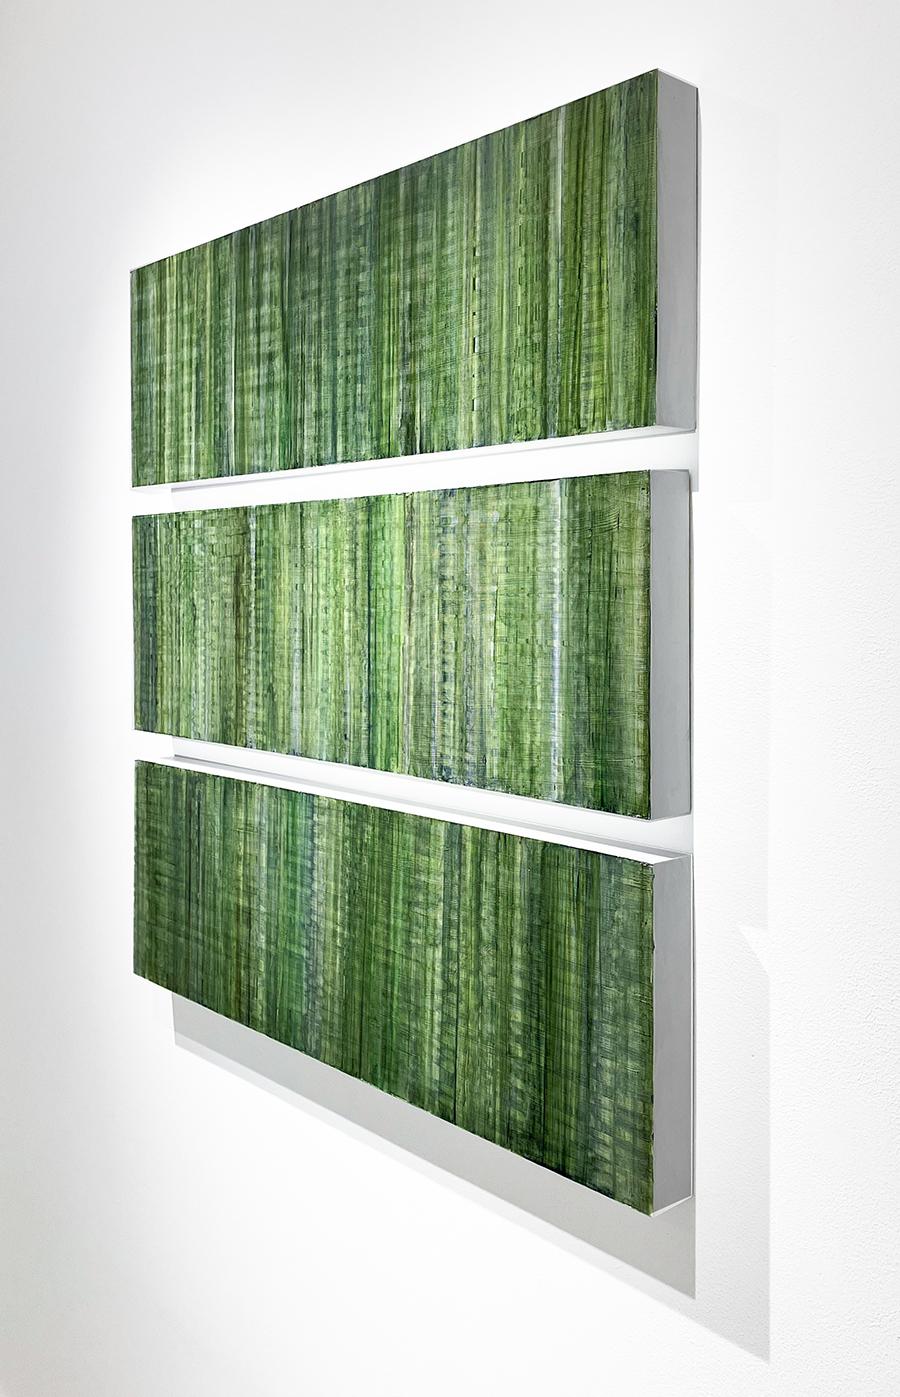 C22-9 (Champ de couleurs géométrique abstrait) Peinture multi-panneaux dans les tons de vert par Ginny Fox
La peinture est présentée sur trois panneaux mesurant chacun 36 x 12 x 2 pouces.
Peut être orienté verticalement ou horizontalement

À la fois